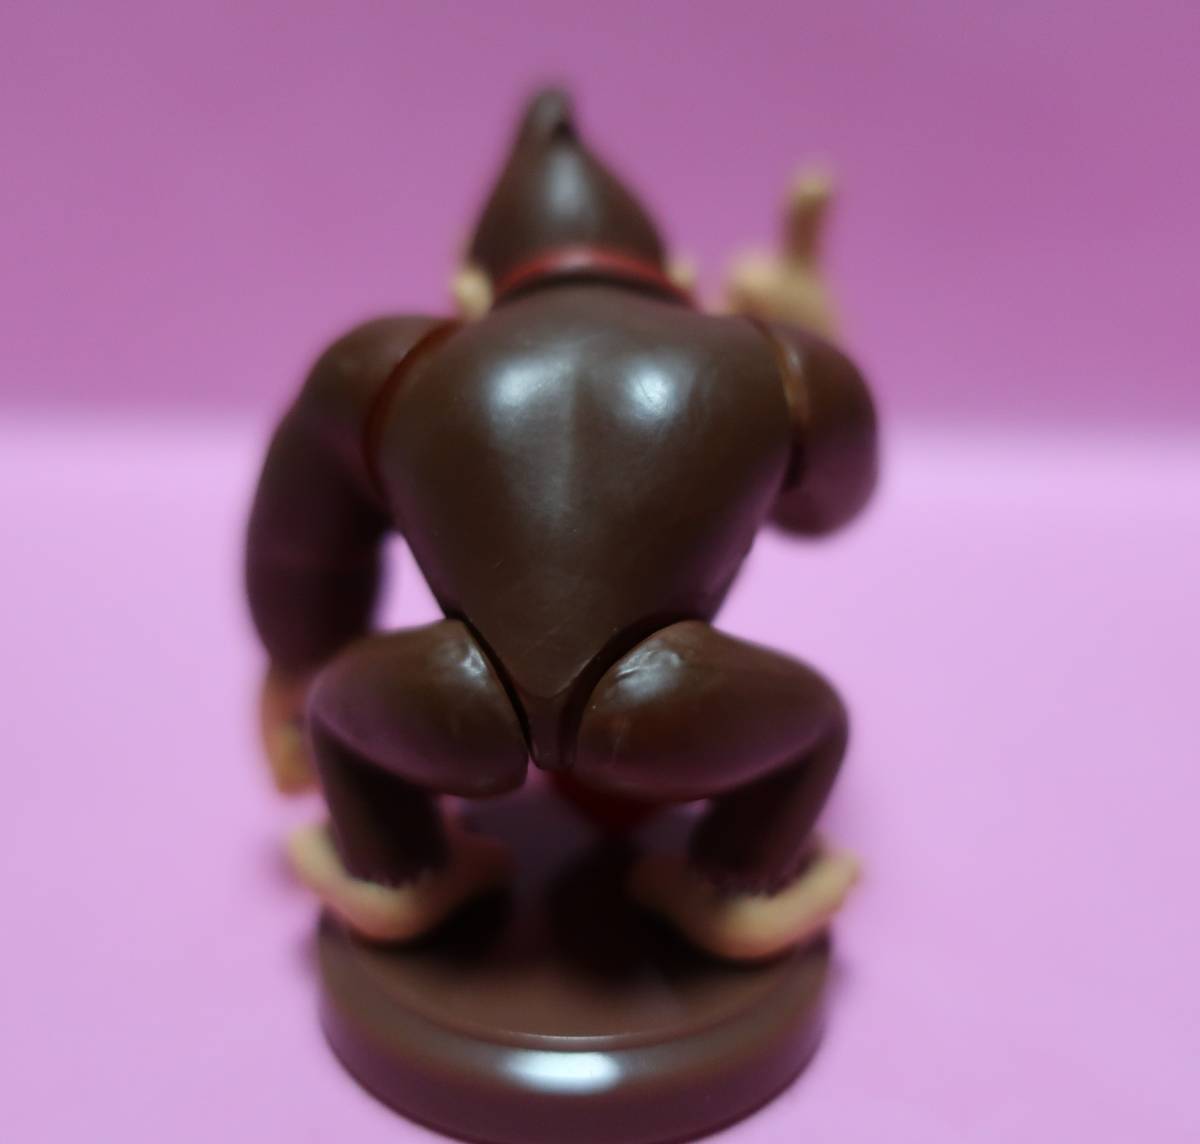  chocolate egg super Mario *1. Donkey Kong used 